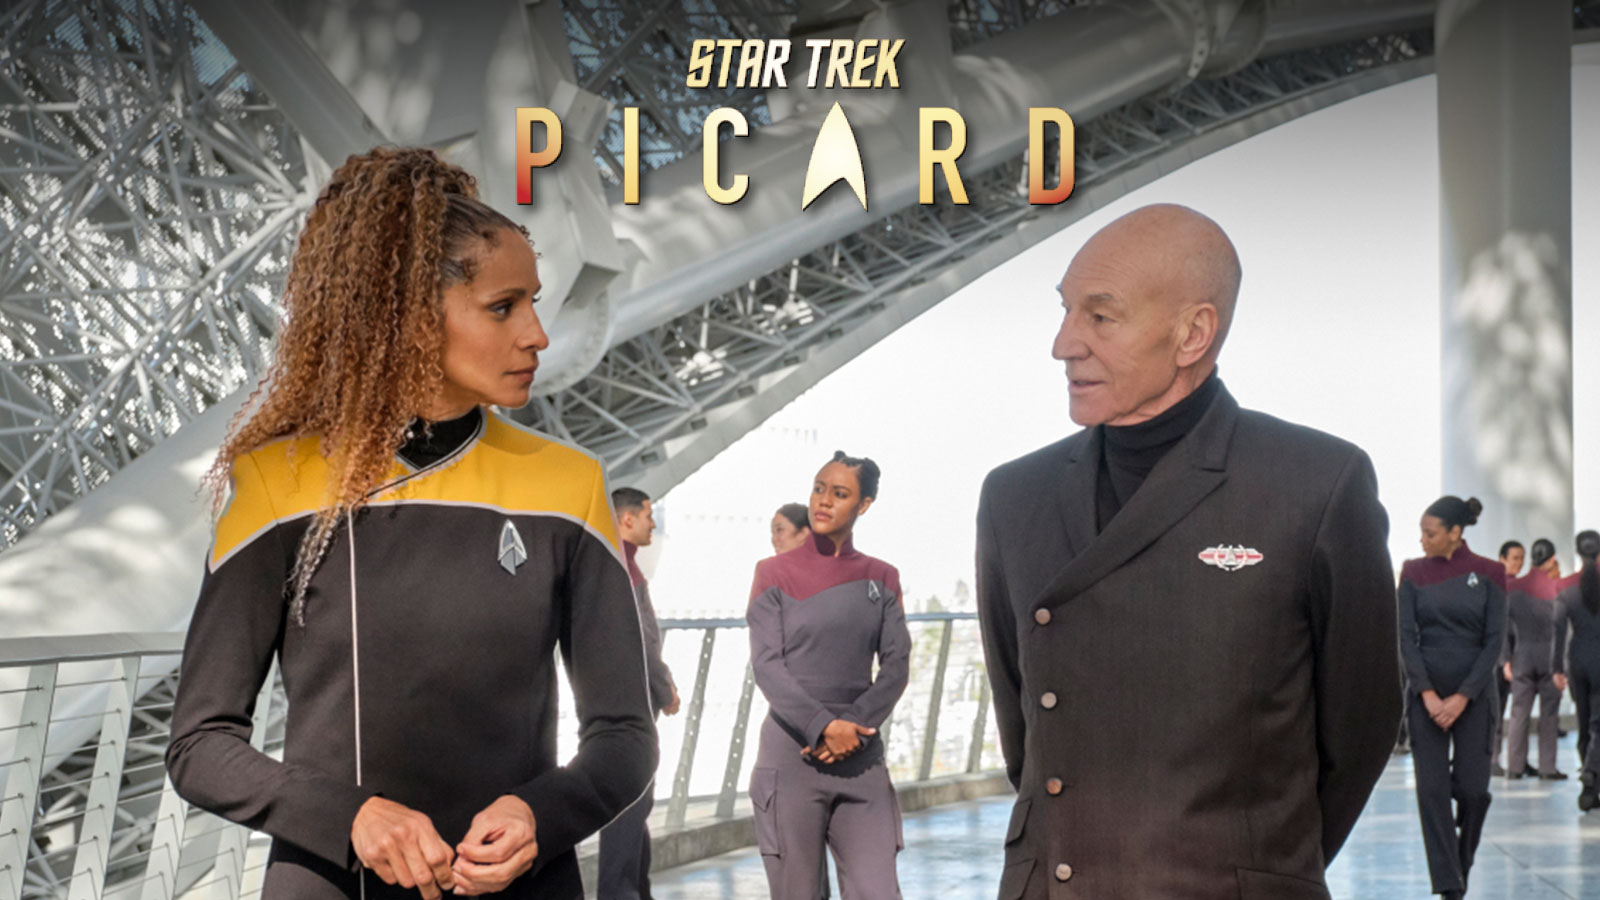 Star Trek: Picard Season 2 Premiere “The Star Gazer” Preview